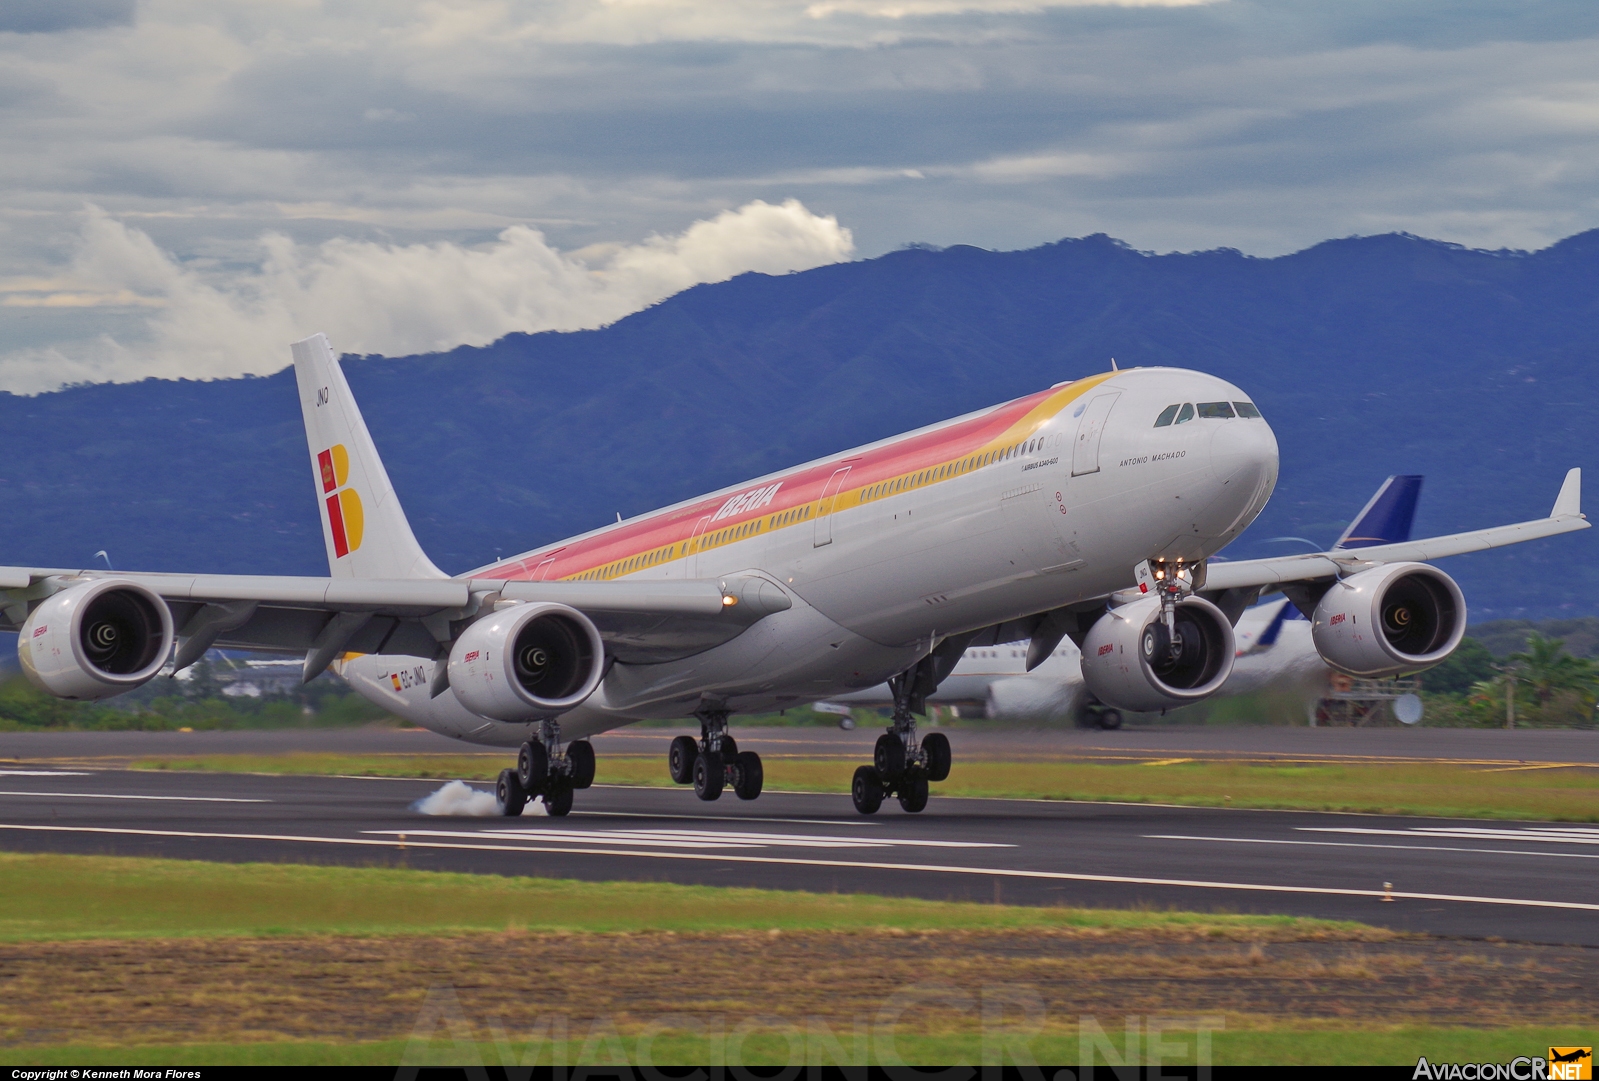 EC-JNQ - Airbus A340-642 - Iberia